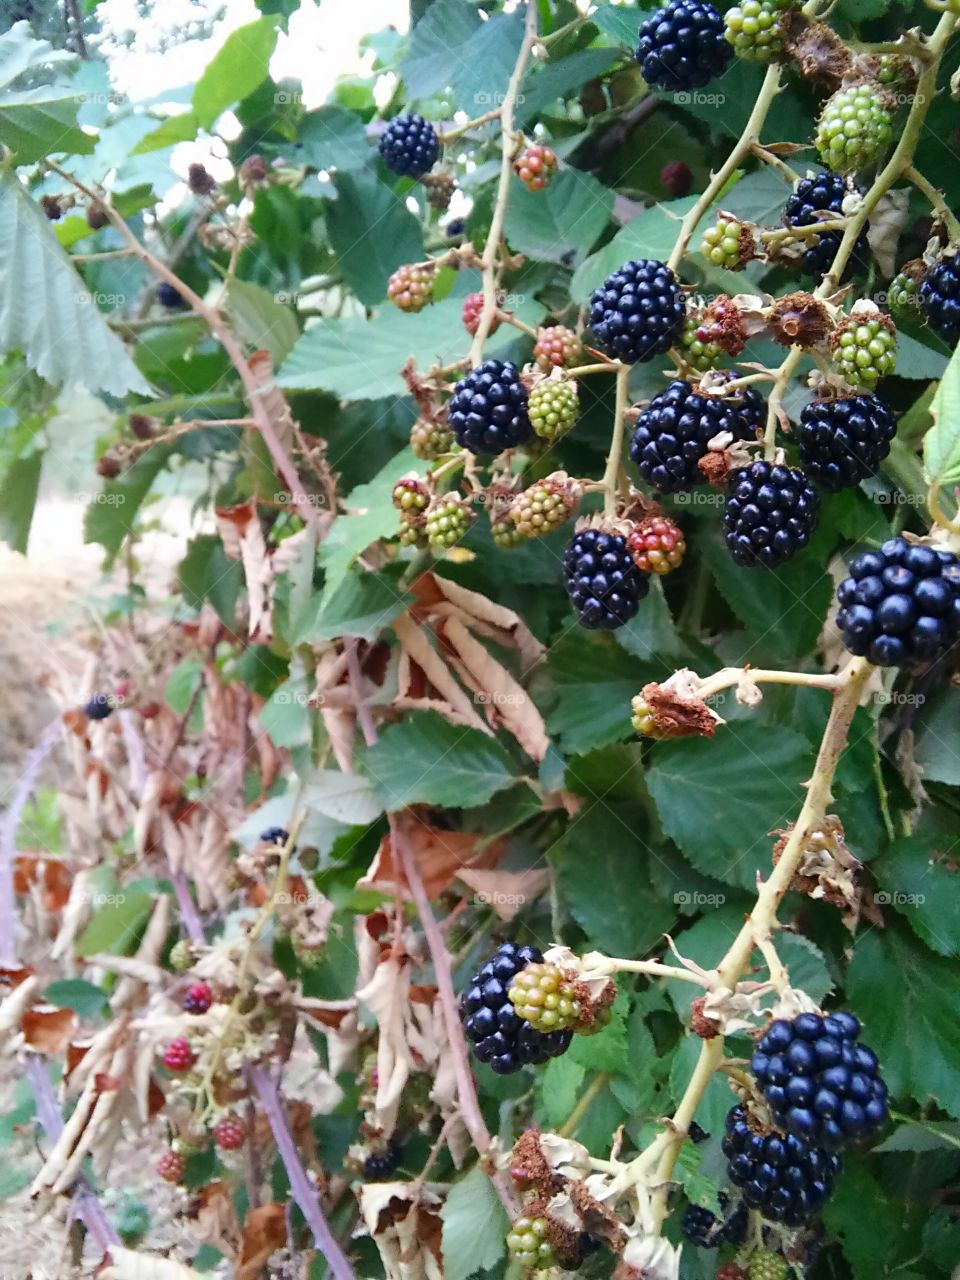 Blackberries. Lots of berries in wild